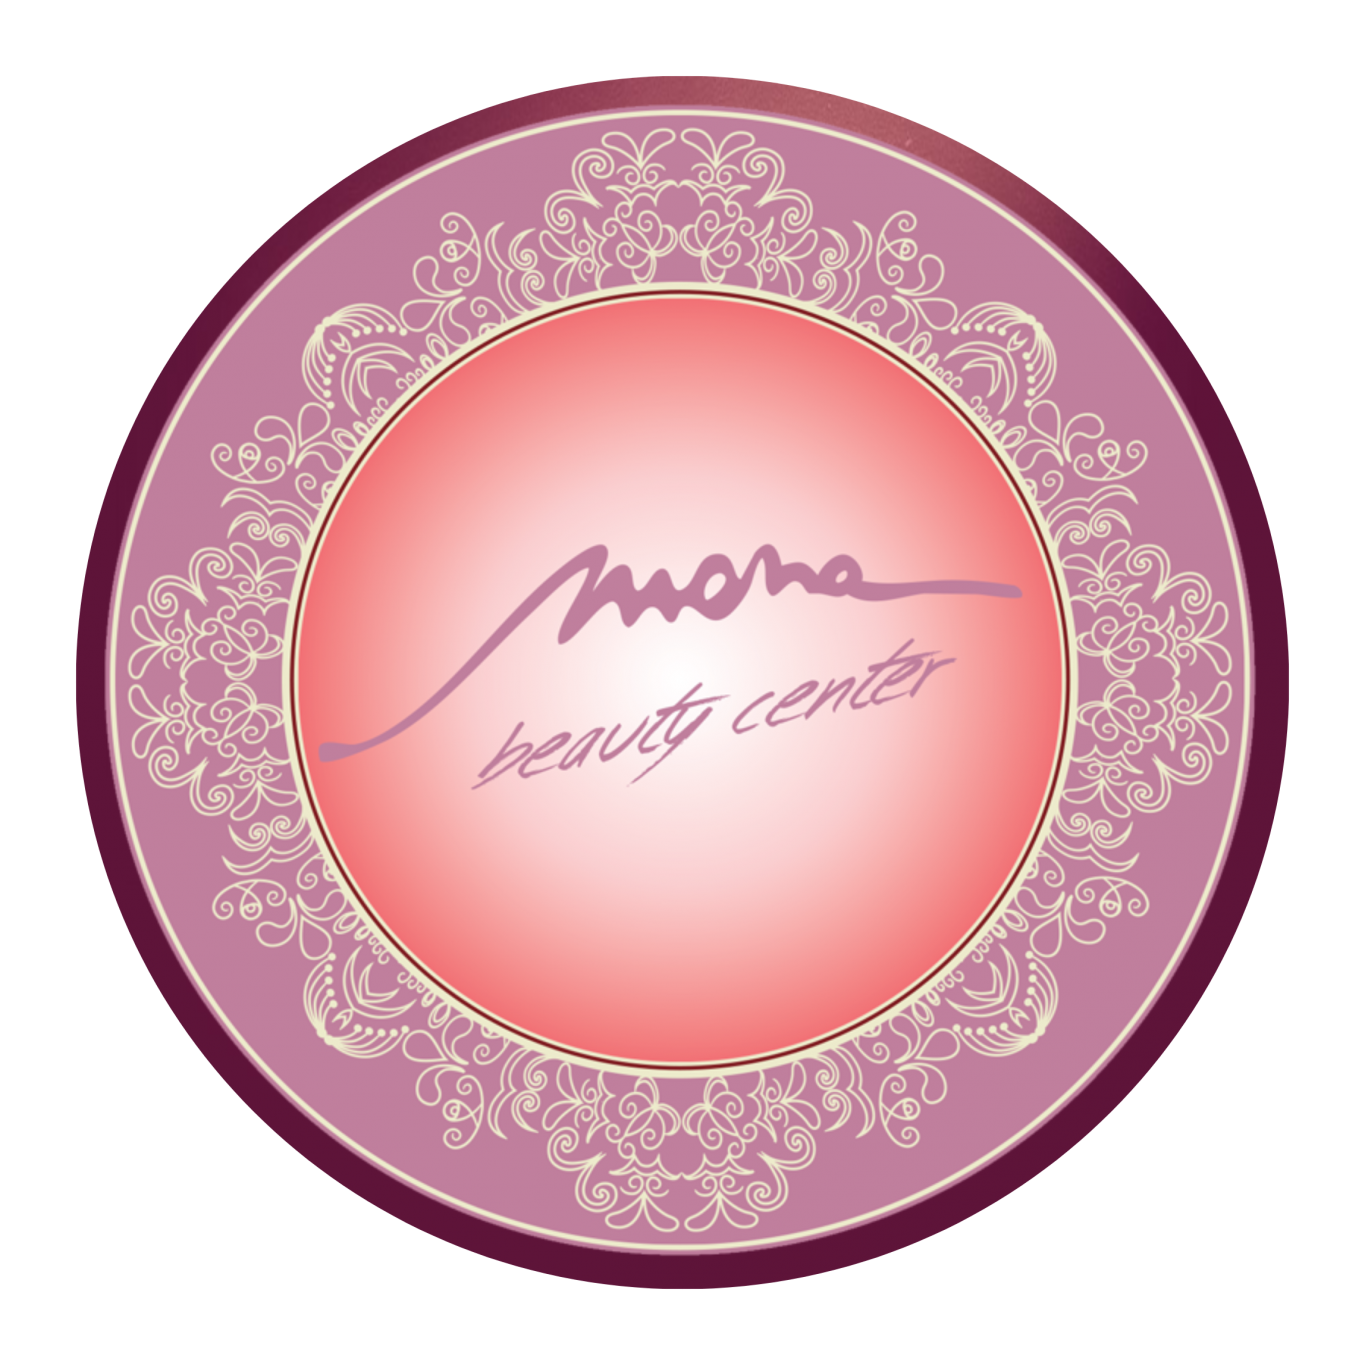 Mona Al Amil Beauty Center logo